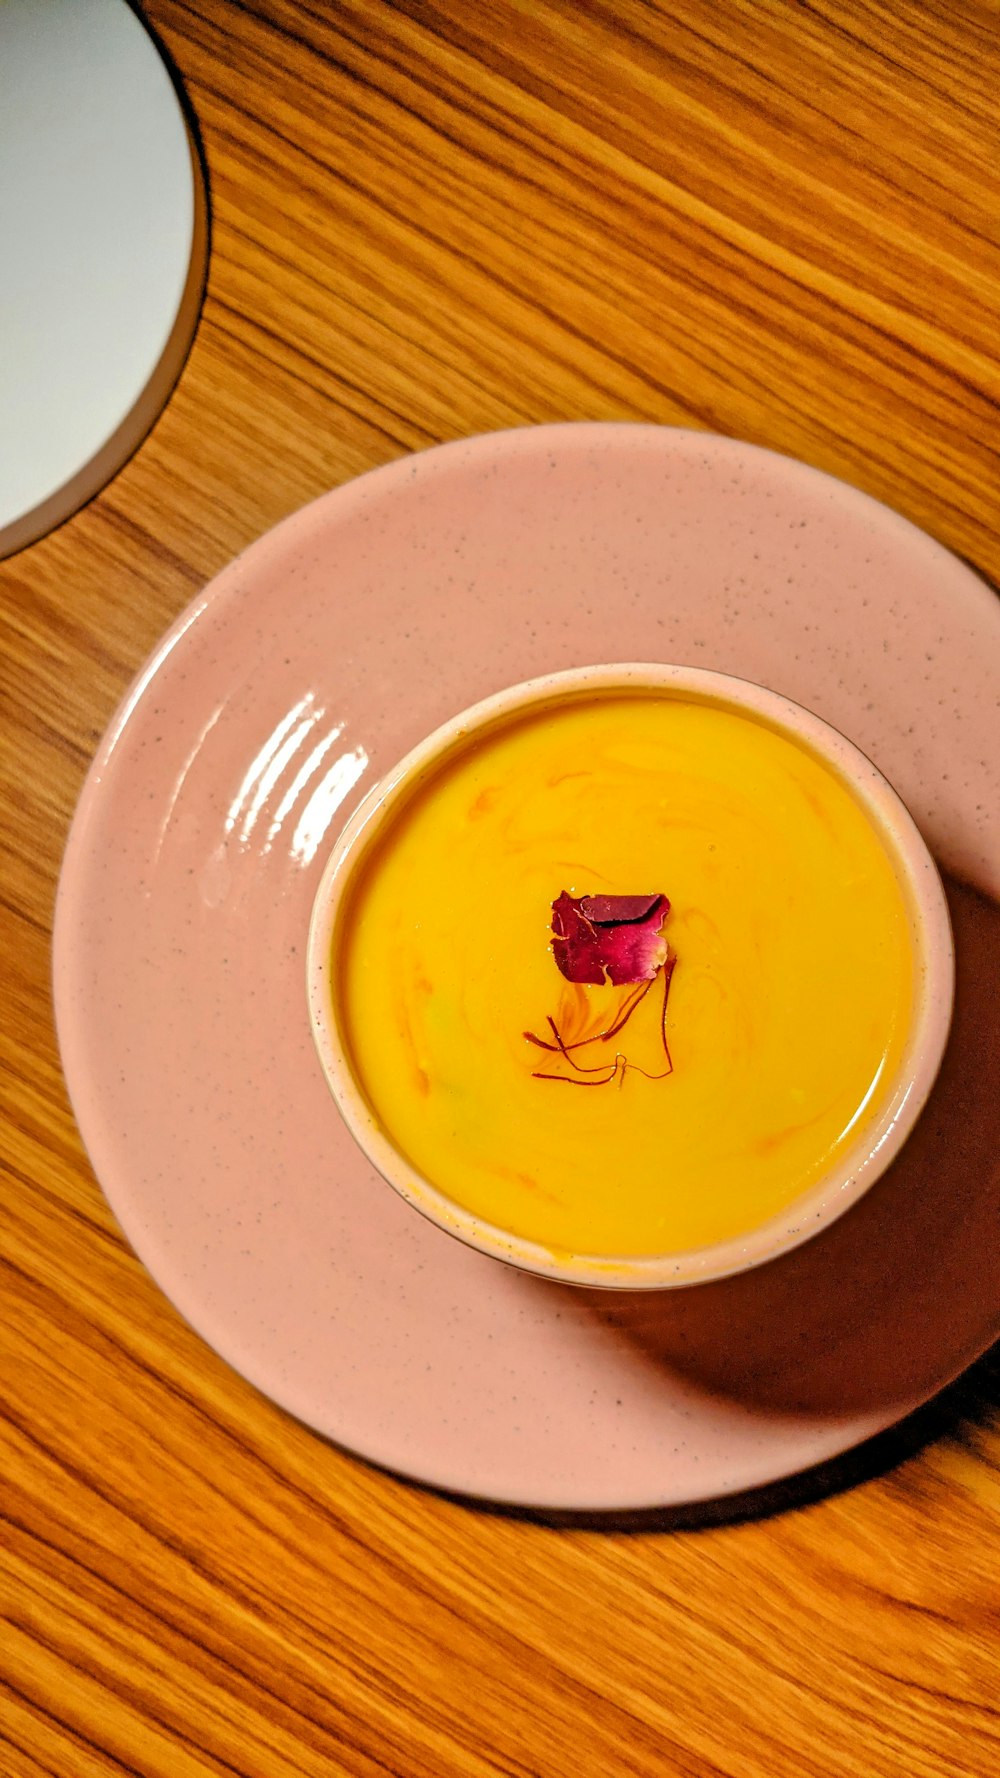 yellow and white ceramic bowl